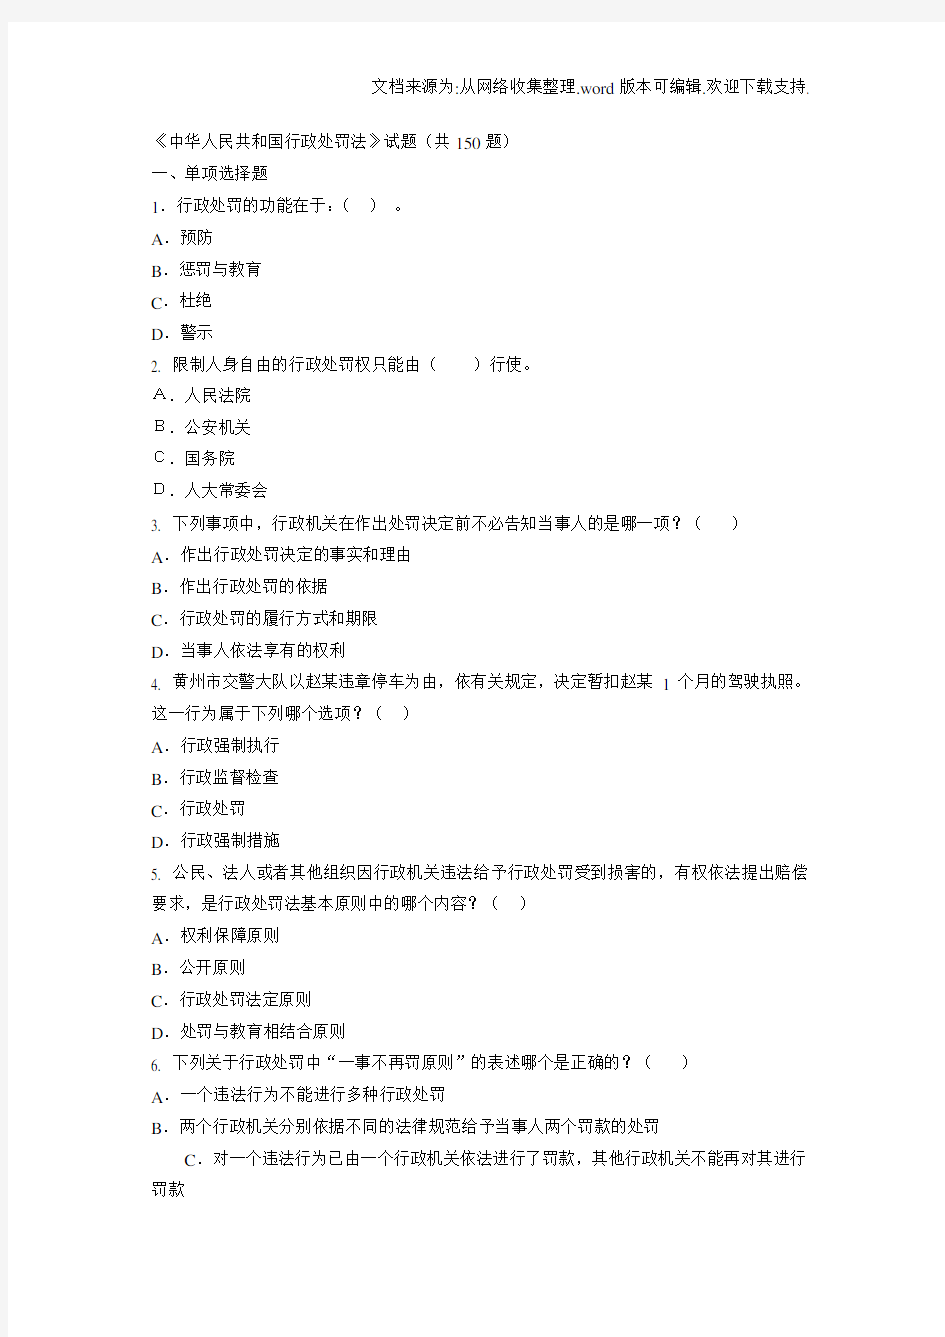 中华人民共和国行政处罚法试题共150题及答案(供参考)